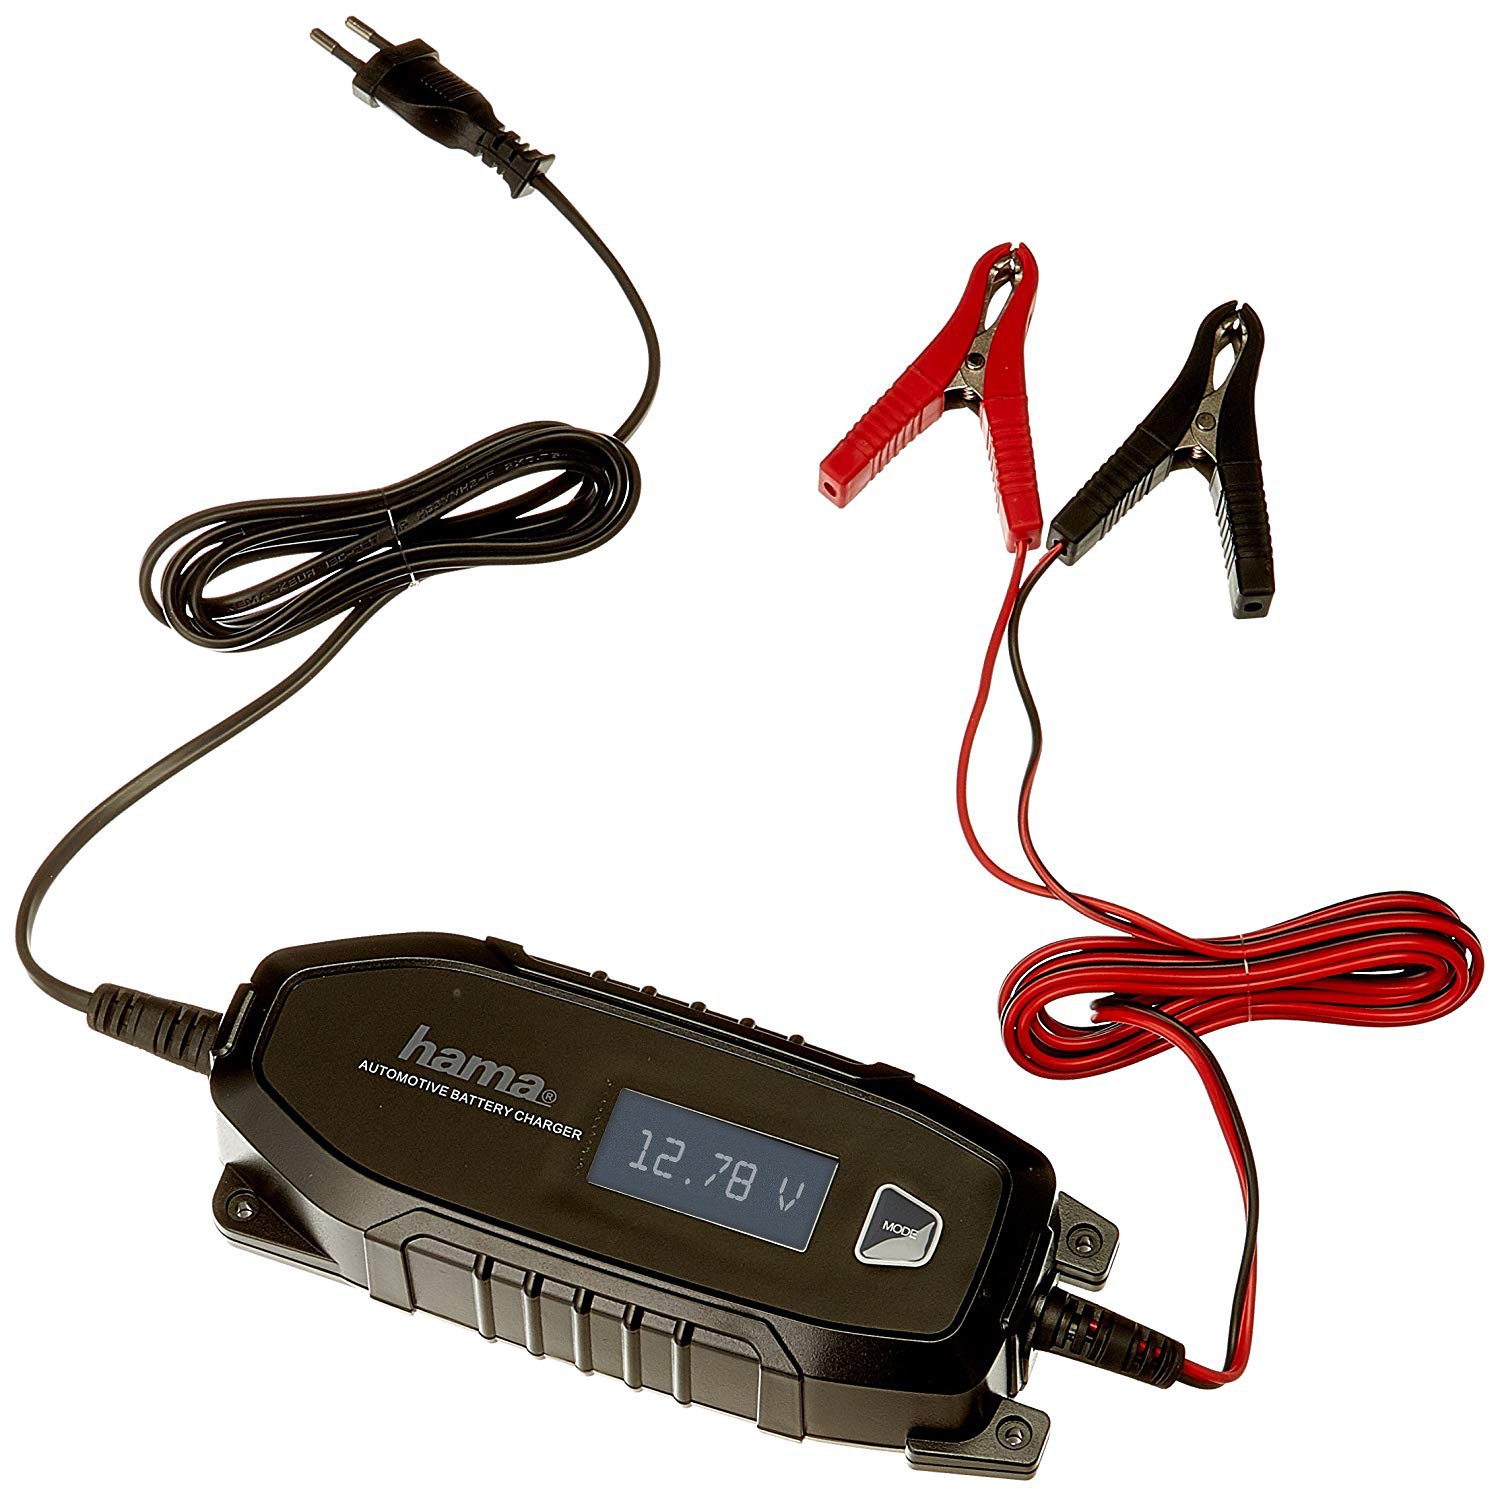 Hama Autobatterie-Ladegerät mit LCD Ladestatus-Anzeige (Vollautomatisches KFZ-Ladegerät für Motorrad/Boot/Auto, Batterie-Ladegerät für 6/12-Volt-Batterie bei Tiefentladung oder zur Erhaltungsladung)